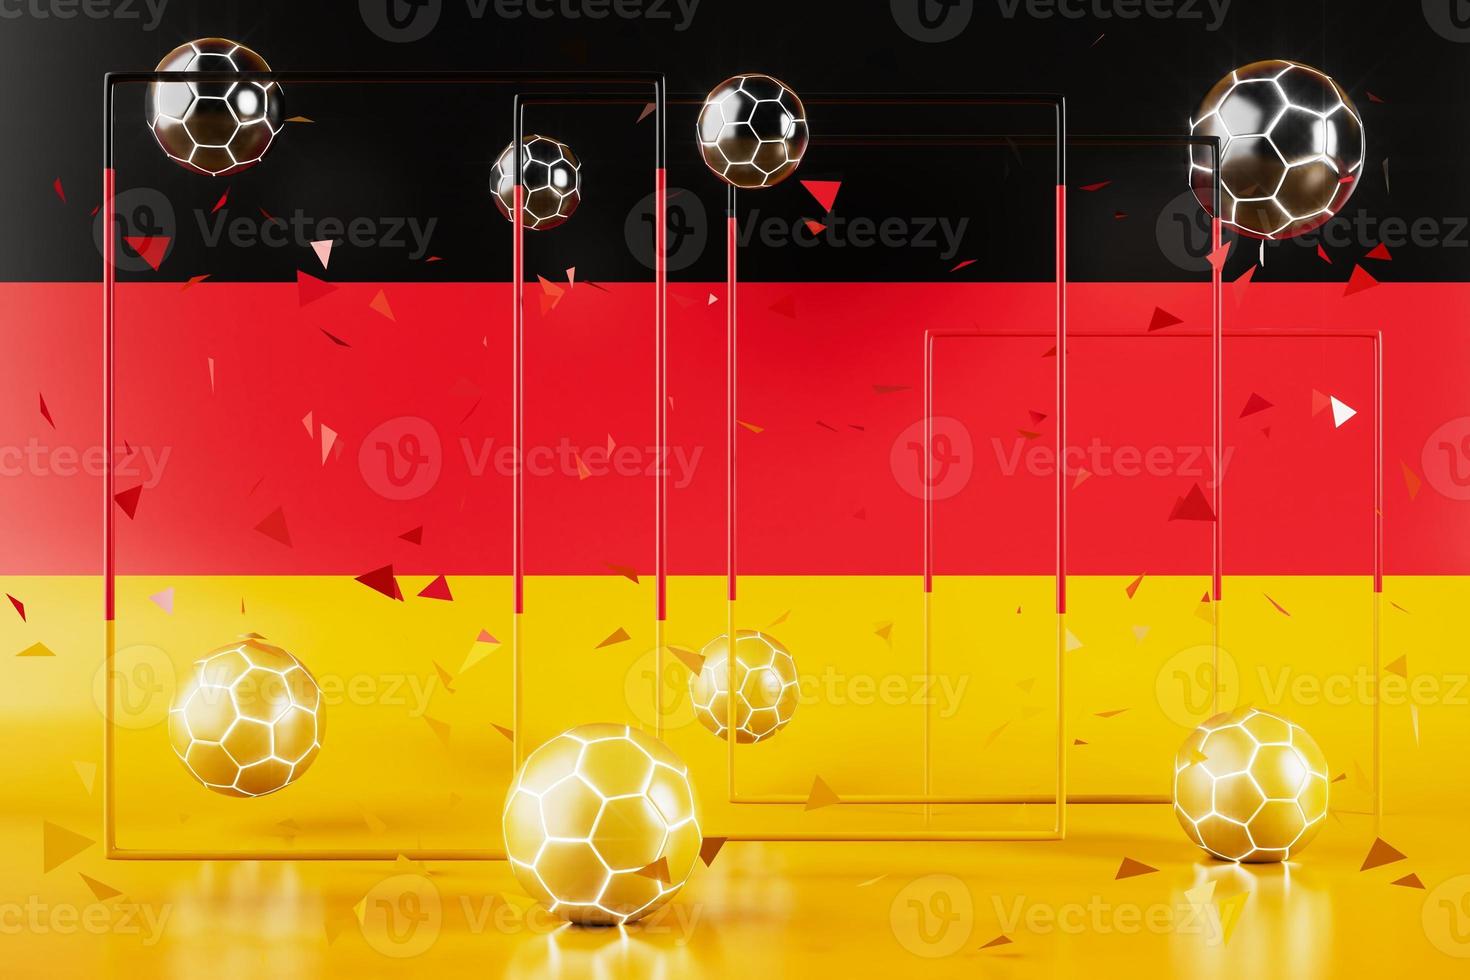 fotboll bollar objekt, sport boll design, fotboll element tysk Färg begrepp, 3d illustration, abstrakt fotboll teknologi, smartphone mobil skärm, grön bakgrund, uppkopplad sport, tysk flagga foto